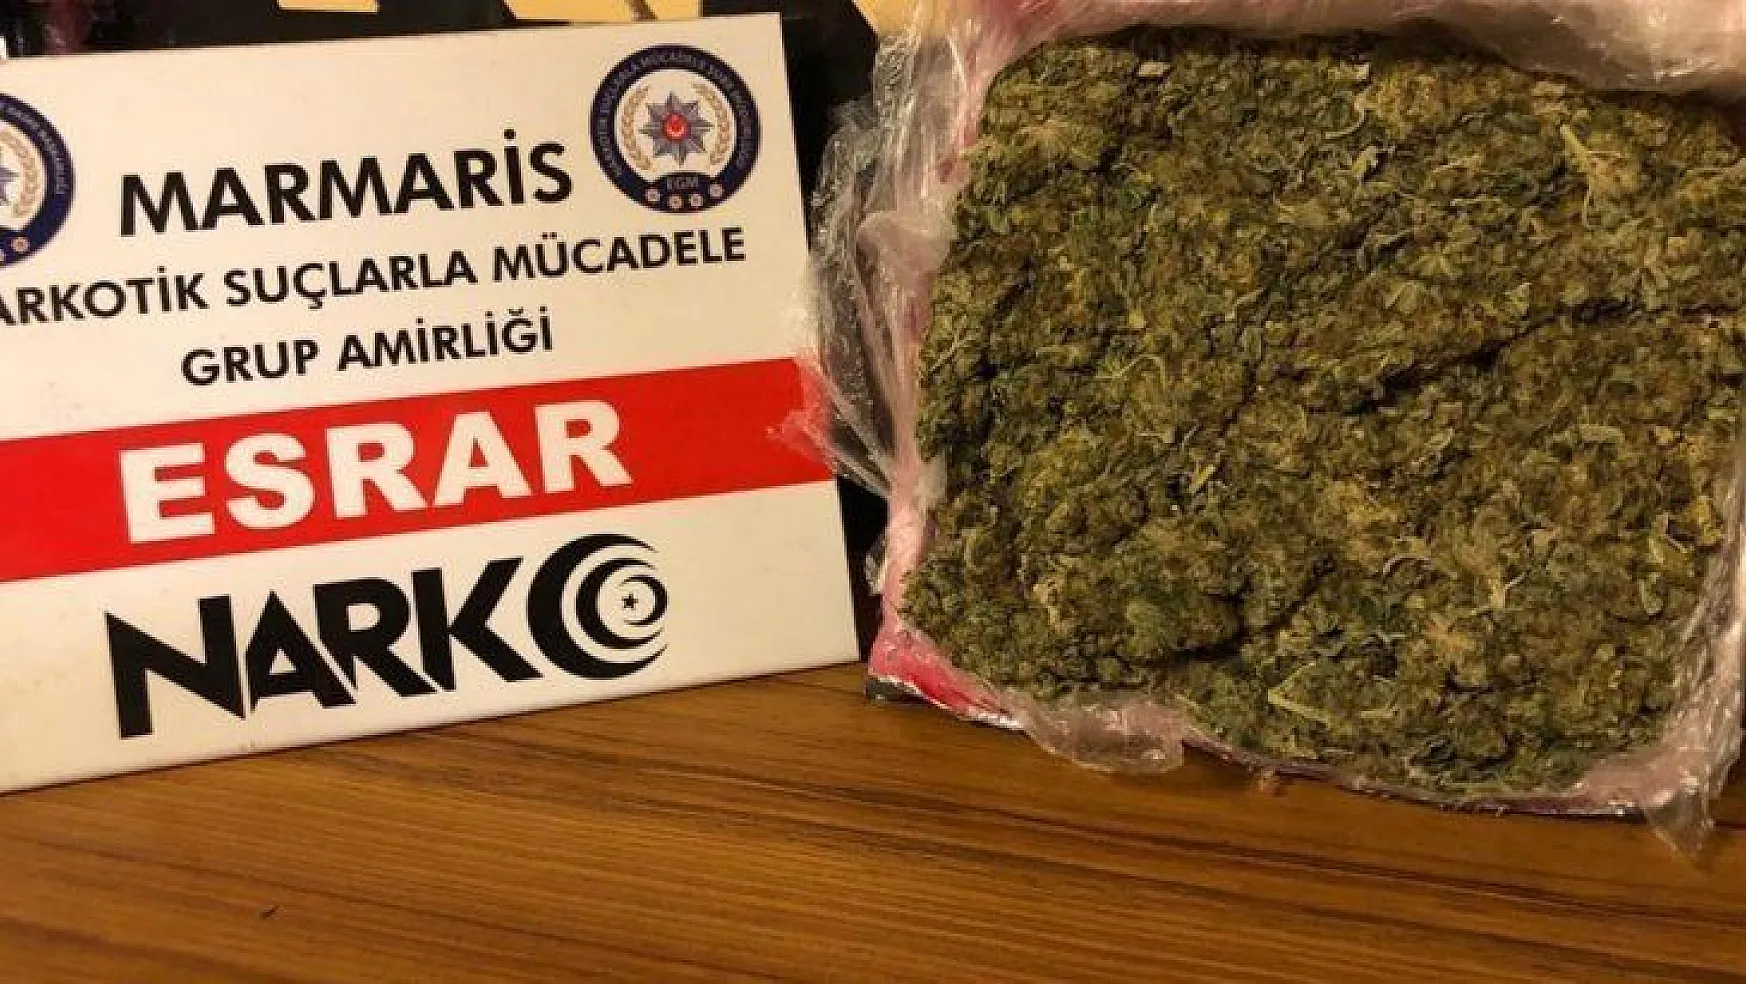 Marmaris'e uyuşturucu madde sokmak isteyen şüpheli polisten kaçamadı